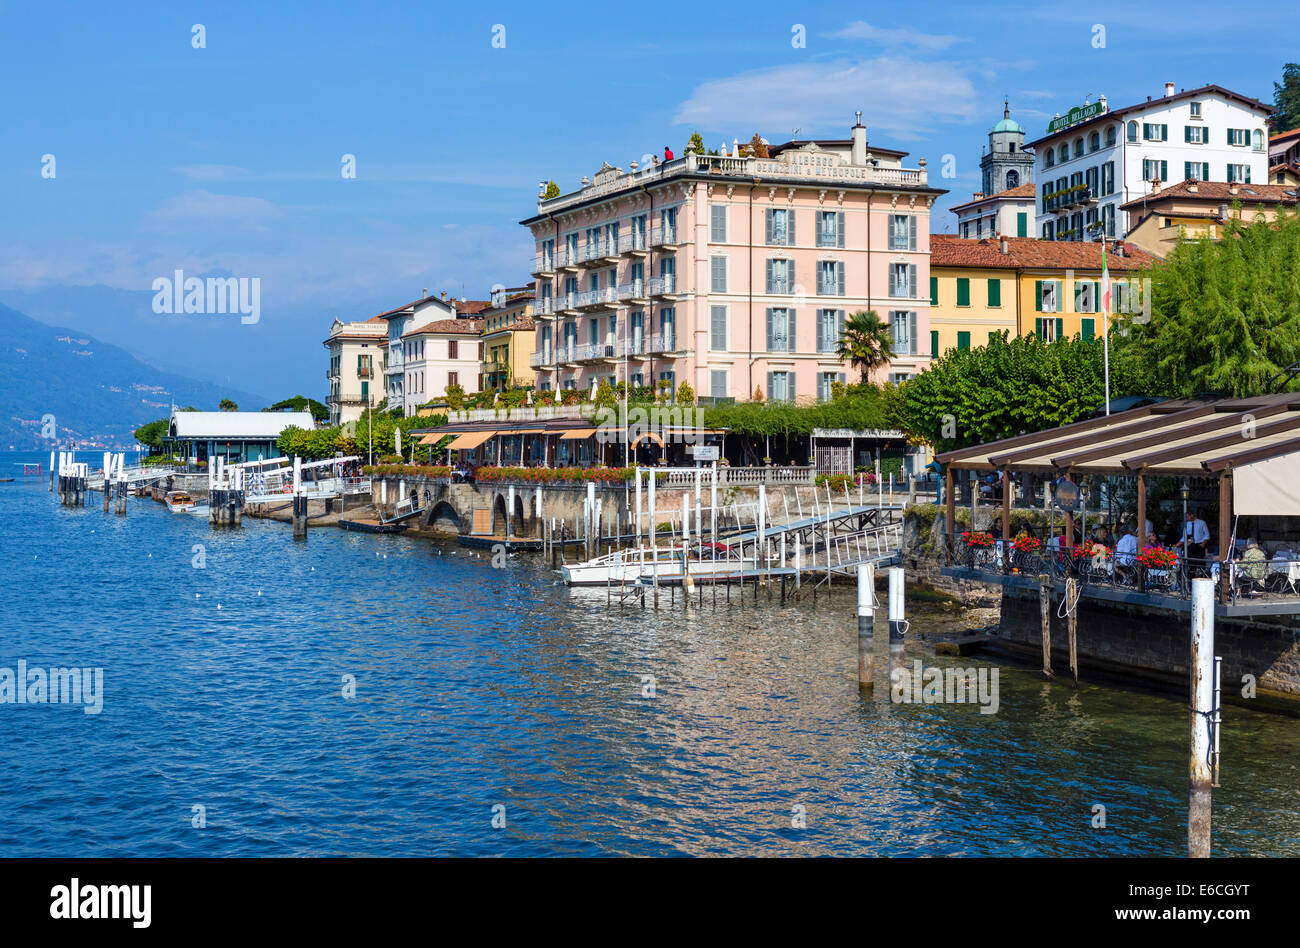 El histórico Hotel Genazzini / Metropole y el hotel Bellagio en la costanera en Bellagio, Lago de Como, en Lombardía, Italia Foto de stock